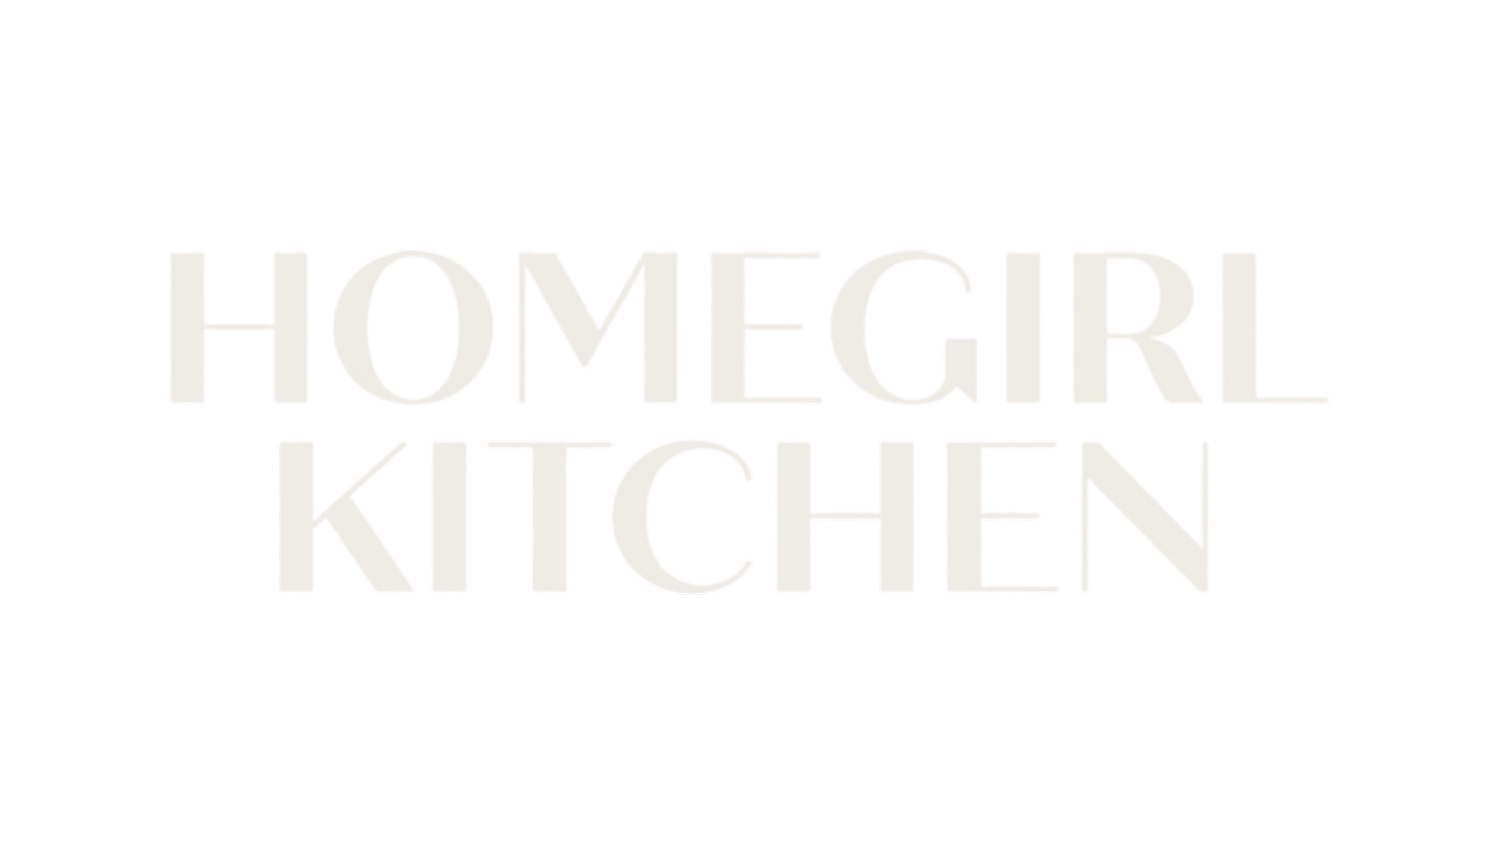 Homegirl Kitchen